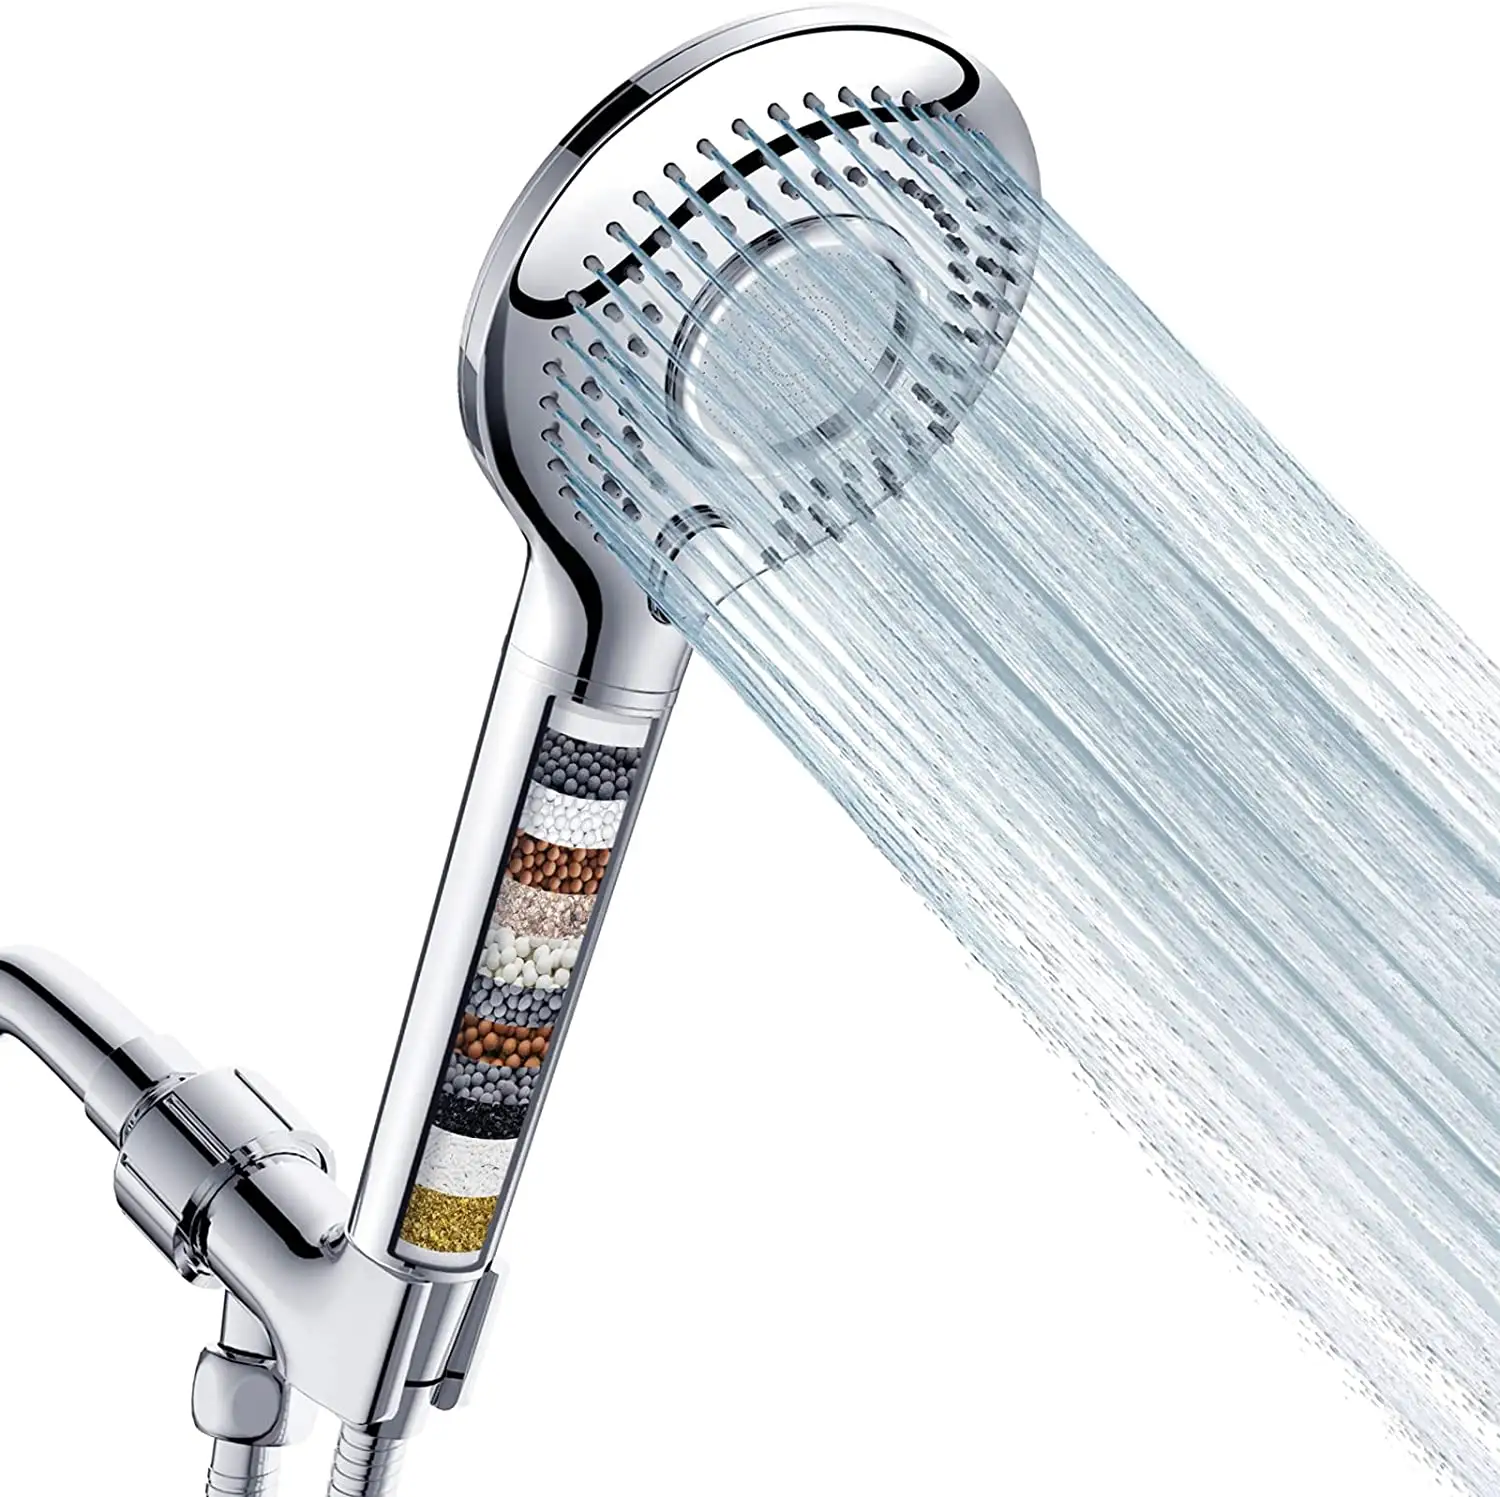 Filtre ile el duş başlığı yüksek basınç 3 sprey modu duş başlığı ile 60 "hortum braketi ve 15 sahne su yumuşatıcı filtreler